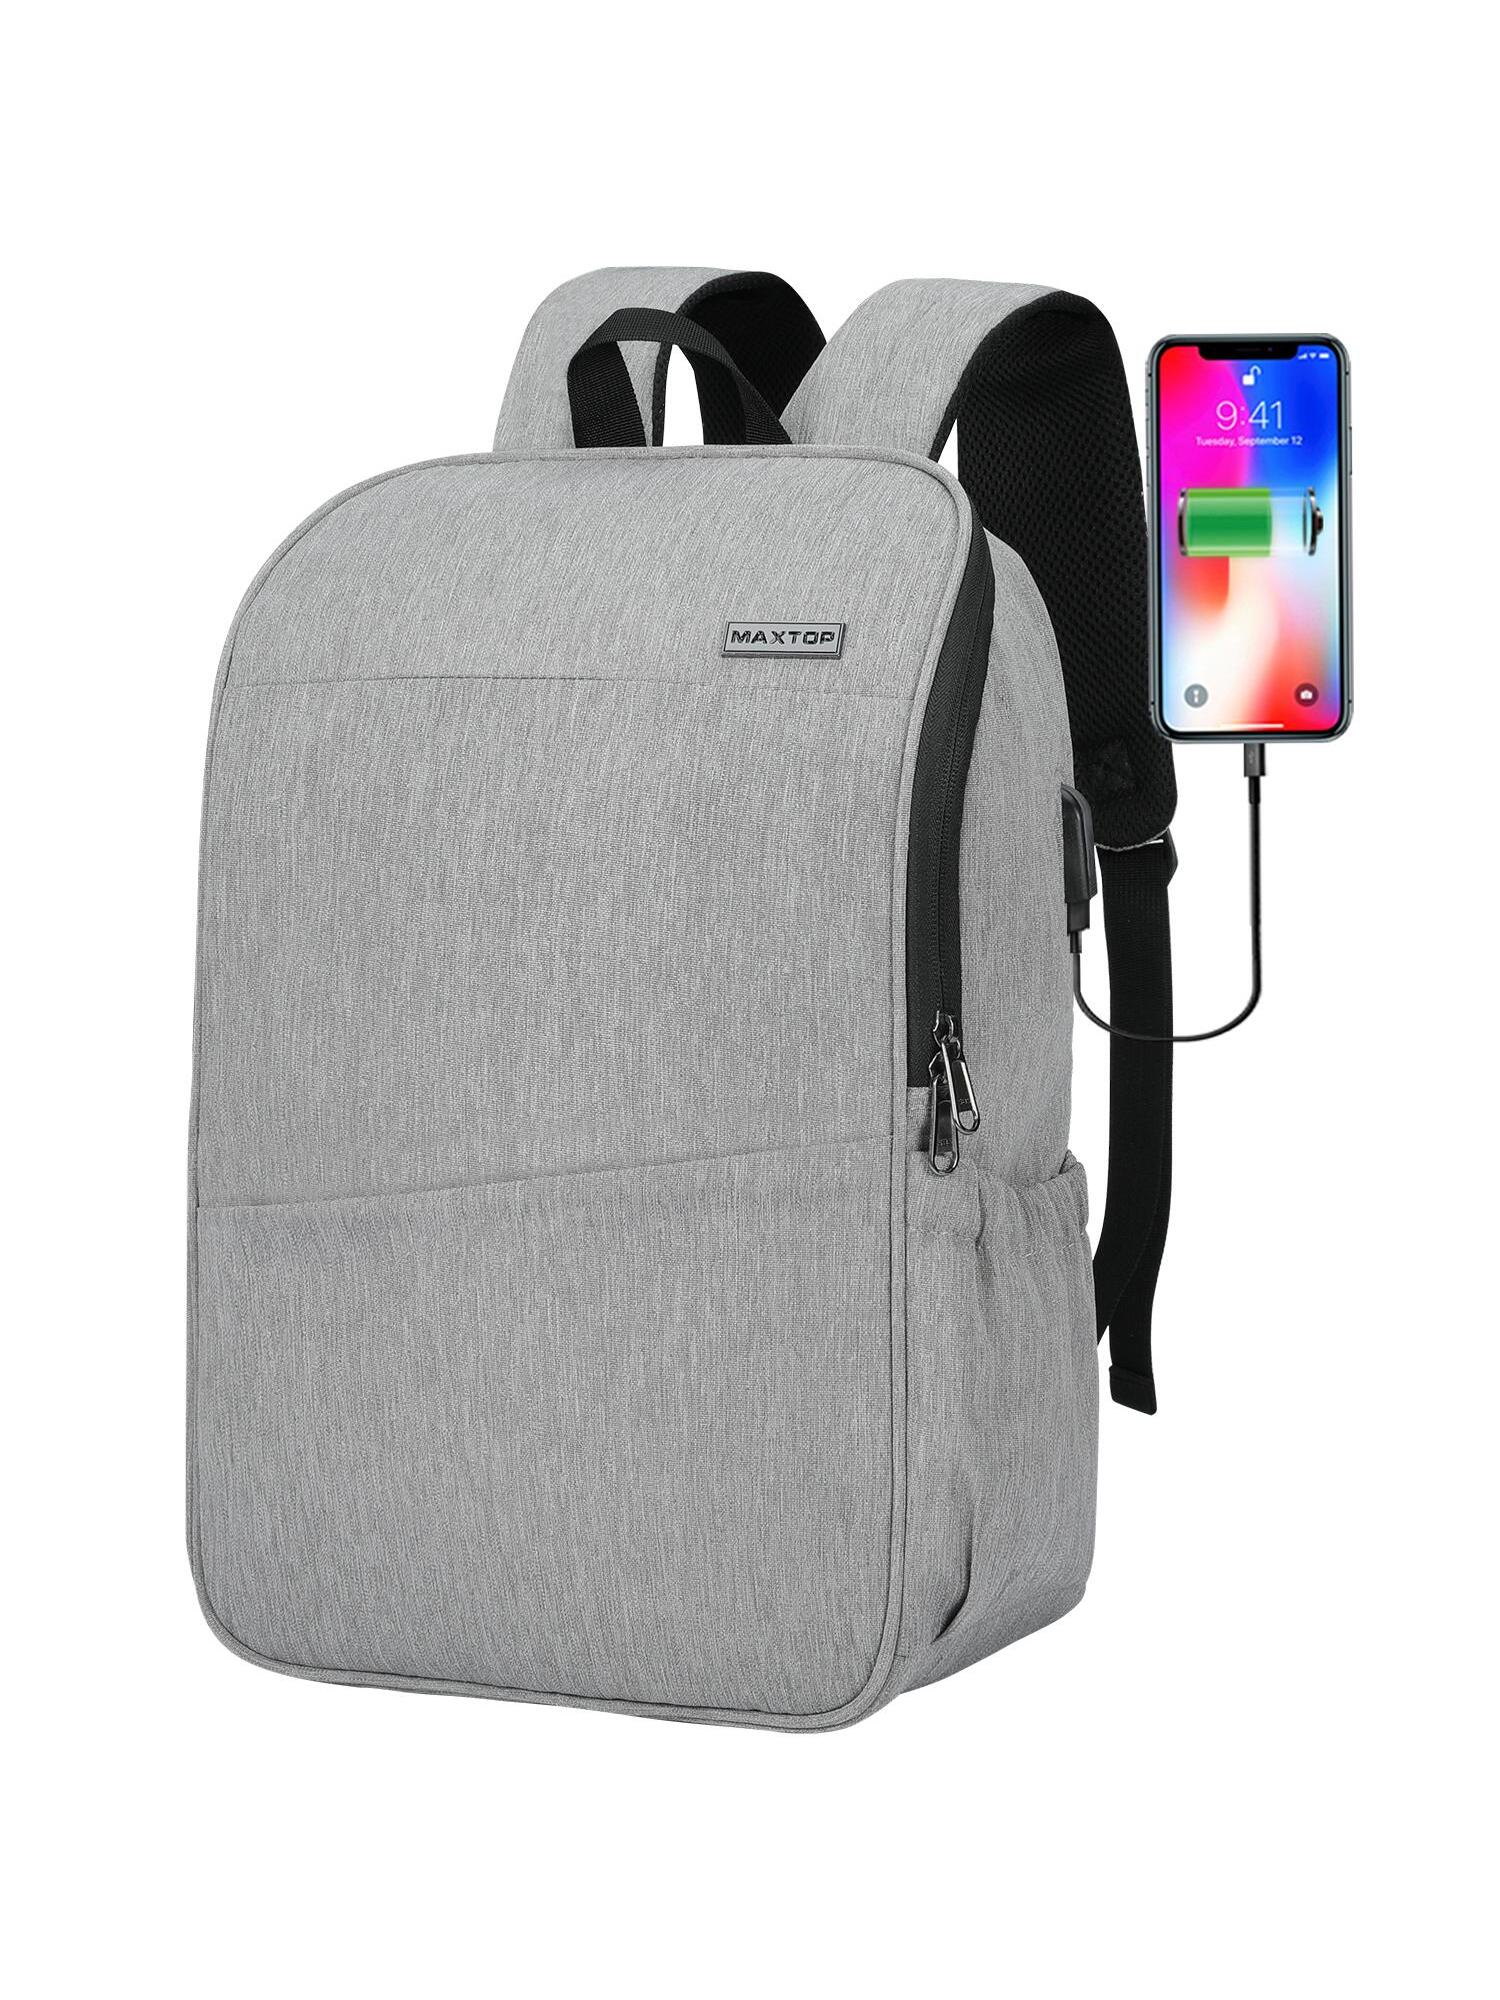 Рюкзак для ноутбука MAXTOP с глубоким хранилищем и USB-портом для зарядки Сумка для студенческого компьютера Подходит для 16-дюймового ноутбука, светло-серый школьный рюкзак для мальчиков и девочек водонепроницаемый с usb портом